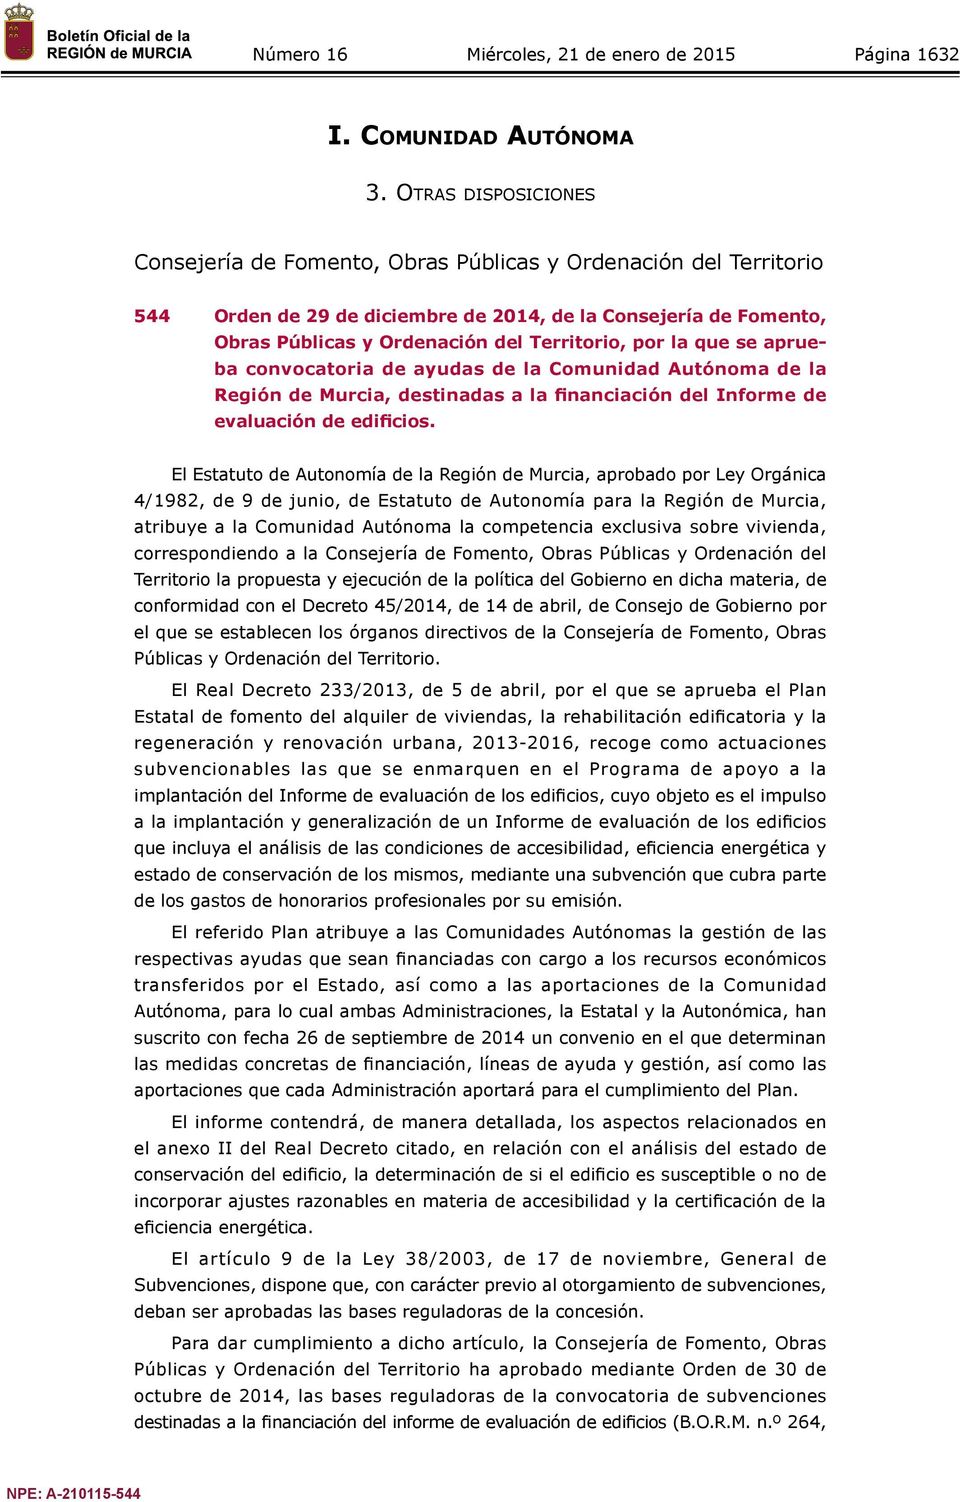 por la que se aprueba convocatoria de ayudas de la Comunidad Autónoma de la Región de Murcia, destinadas a la financiación del Informe de evaluación de edificios.